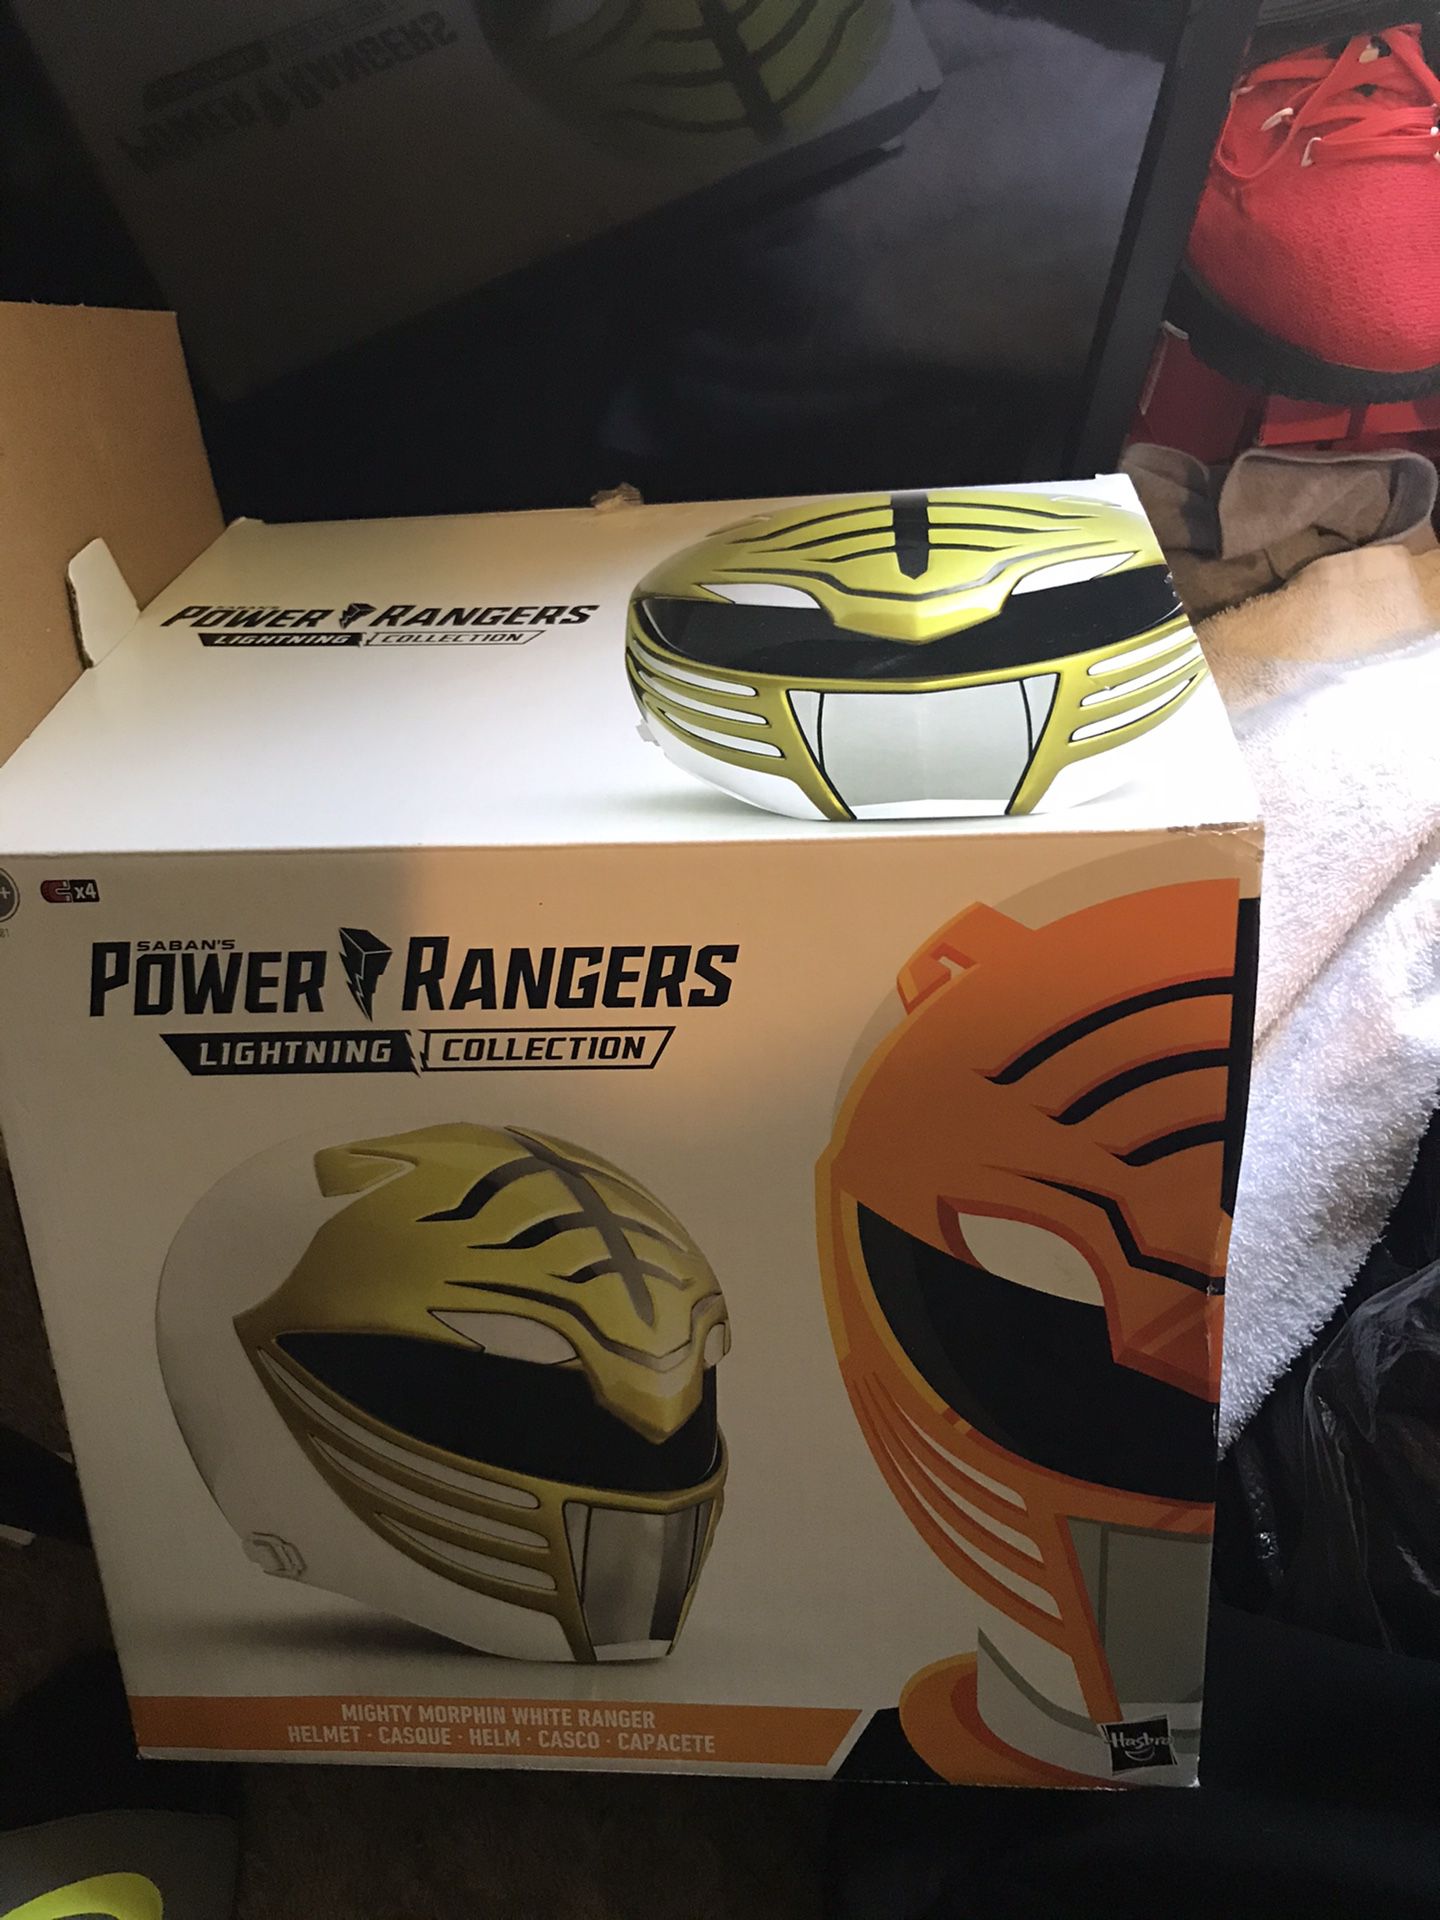 Power ranger helmet